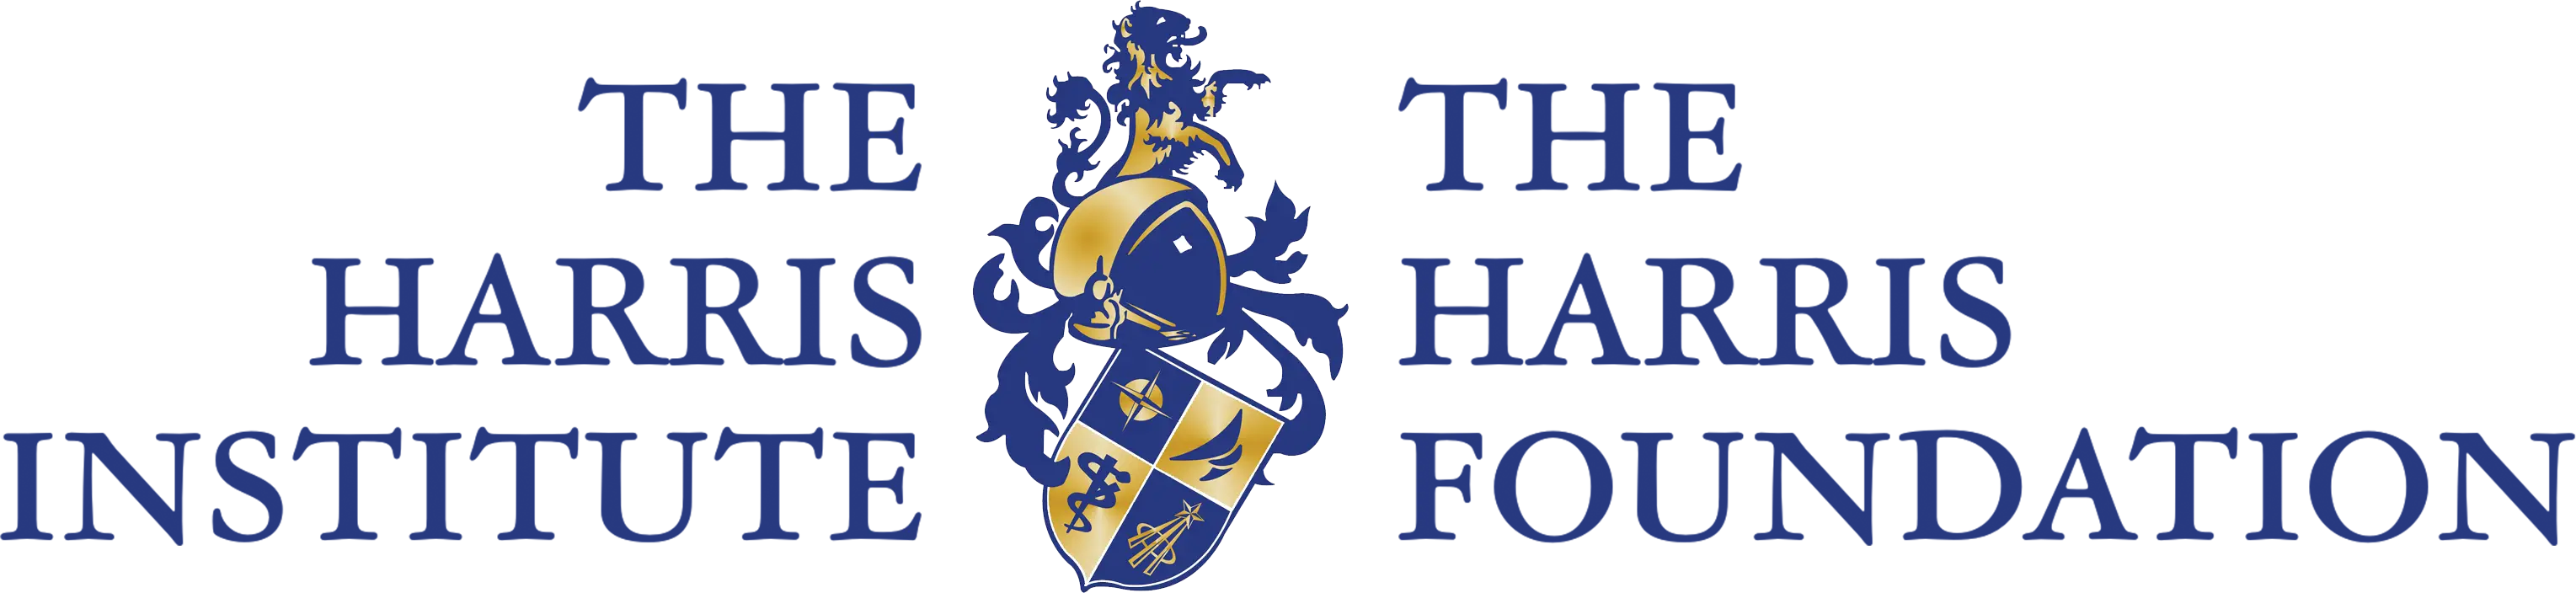 The Harris Institute/Foundation logo